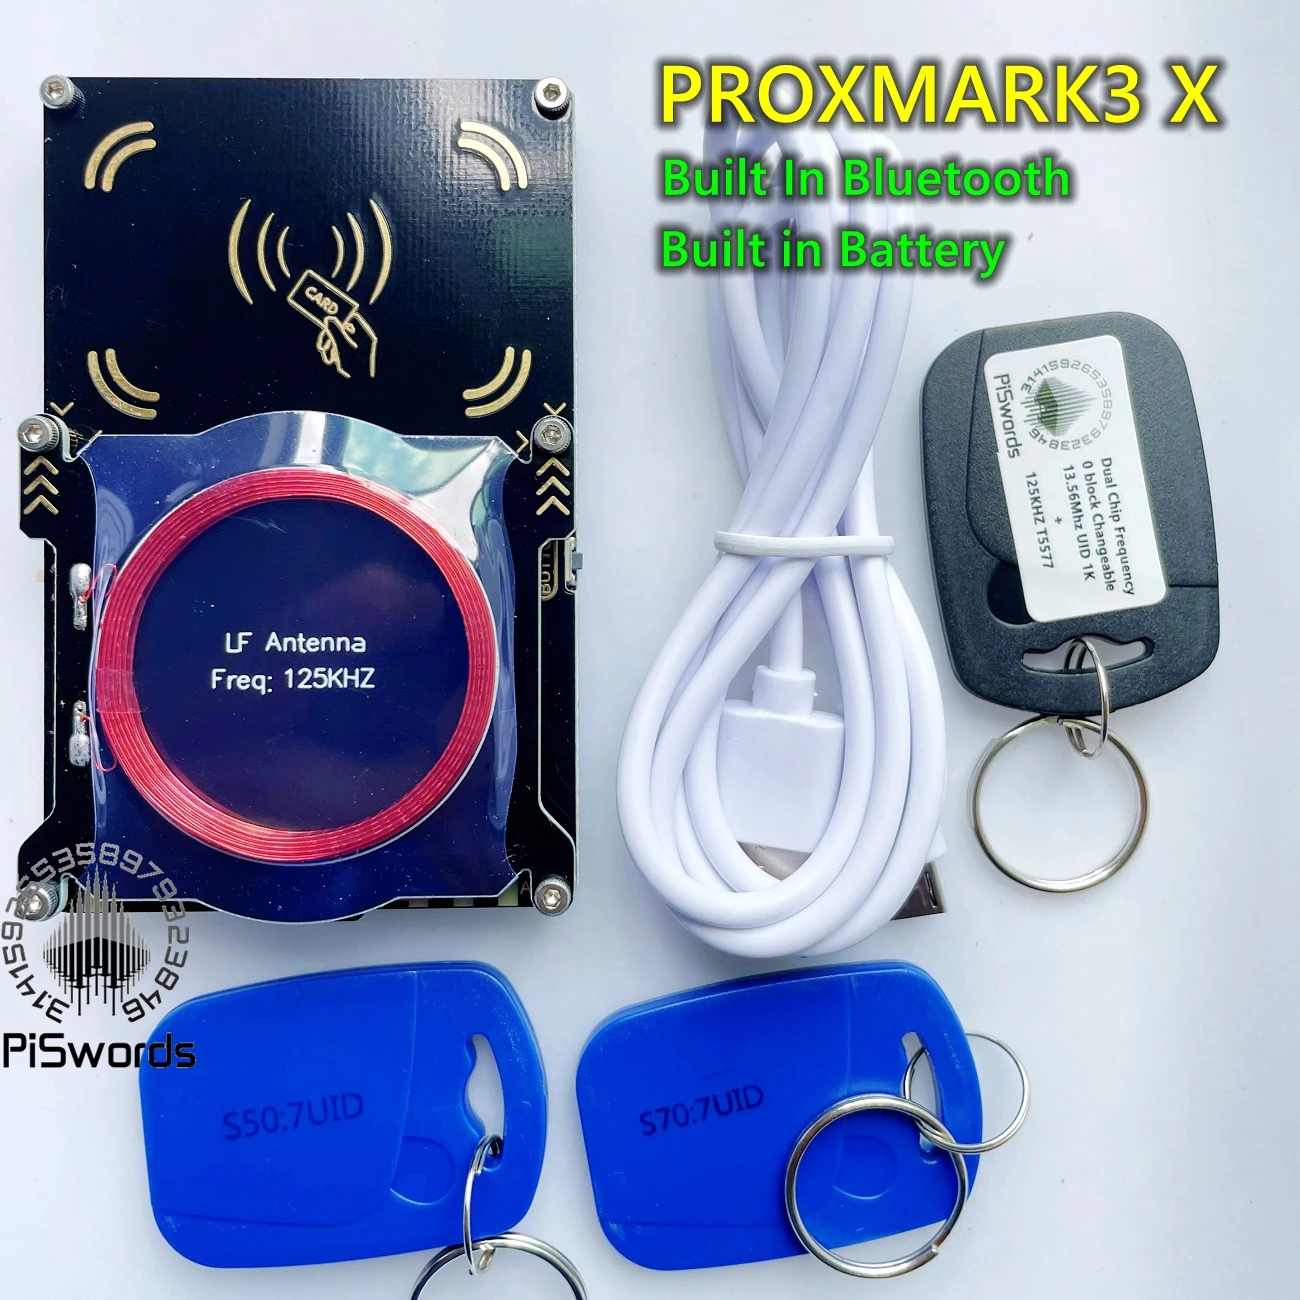 Новата версия на Proxmark3 X Bluetooth За развитие комплекти костюми с вградена батерия за мобилни устройства - 0